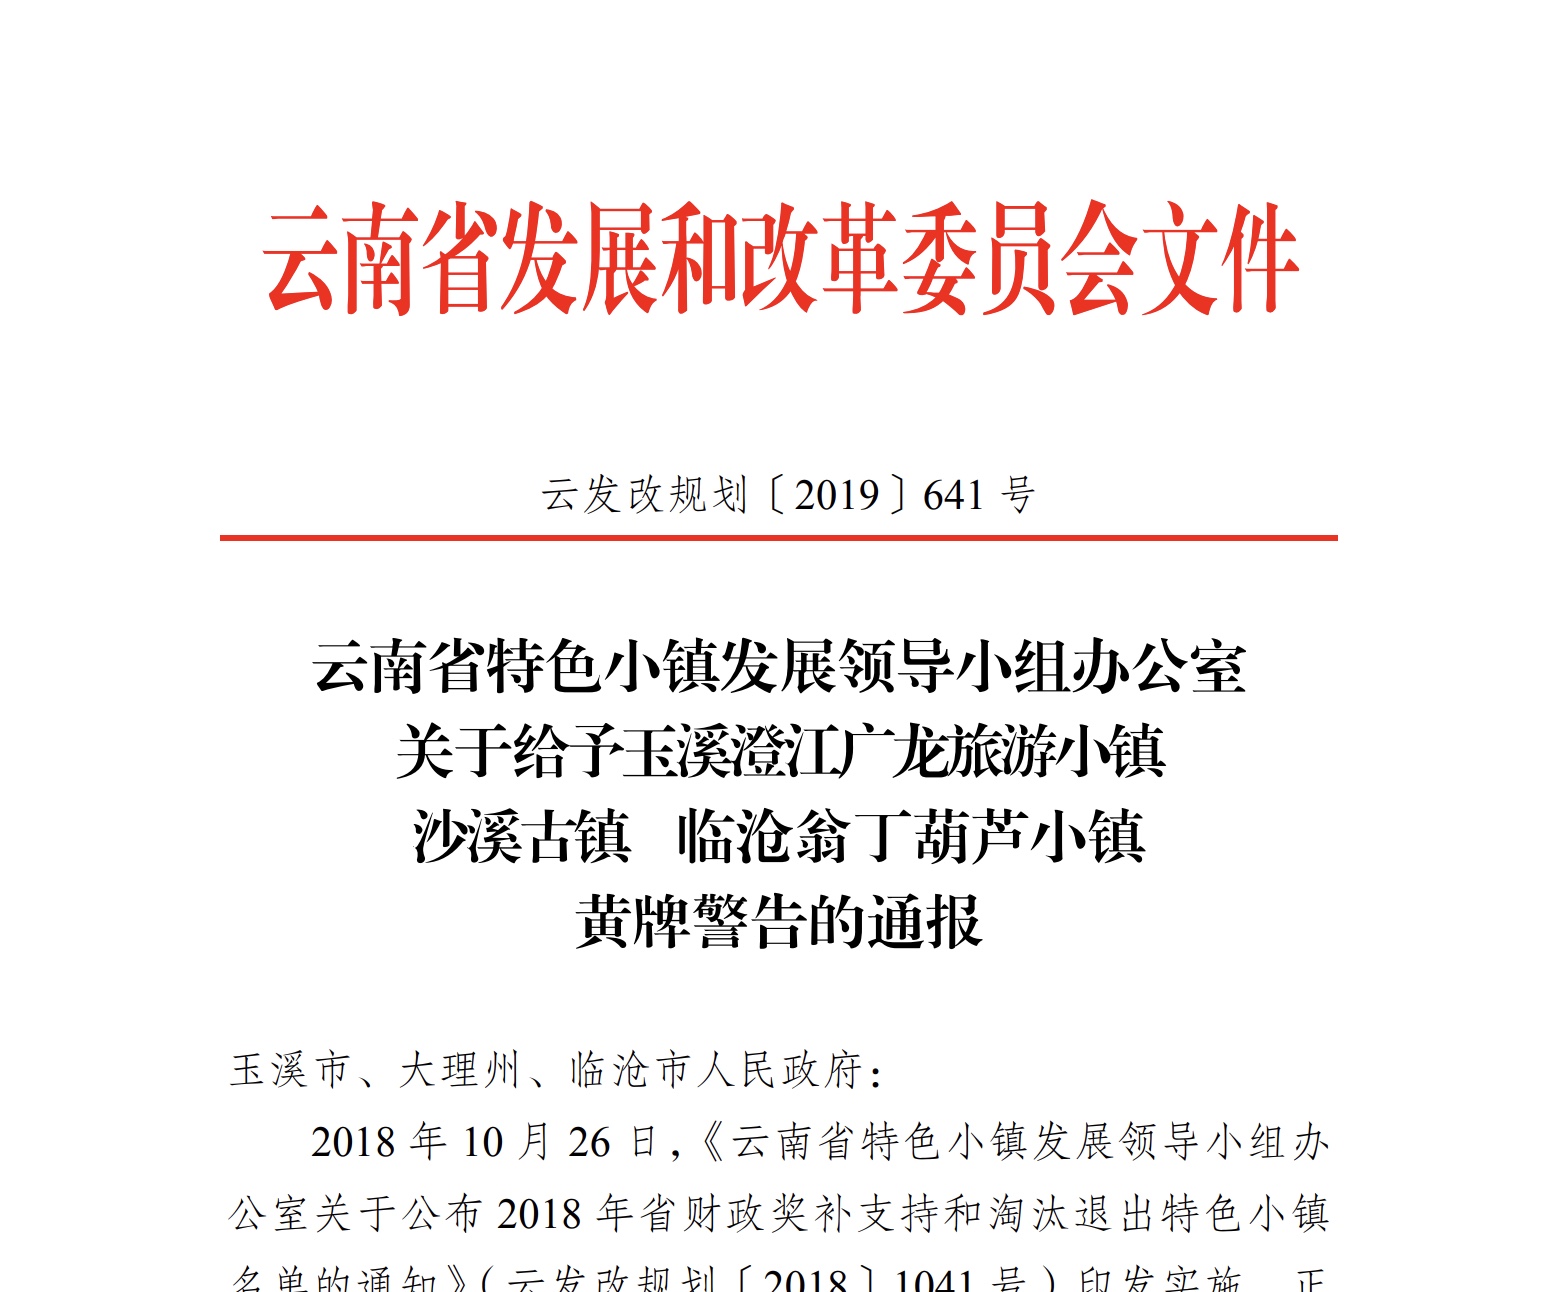 云南翁丁拟获批4A级景区 公示期内被质疑破坏原始风貌